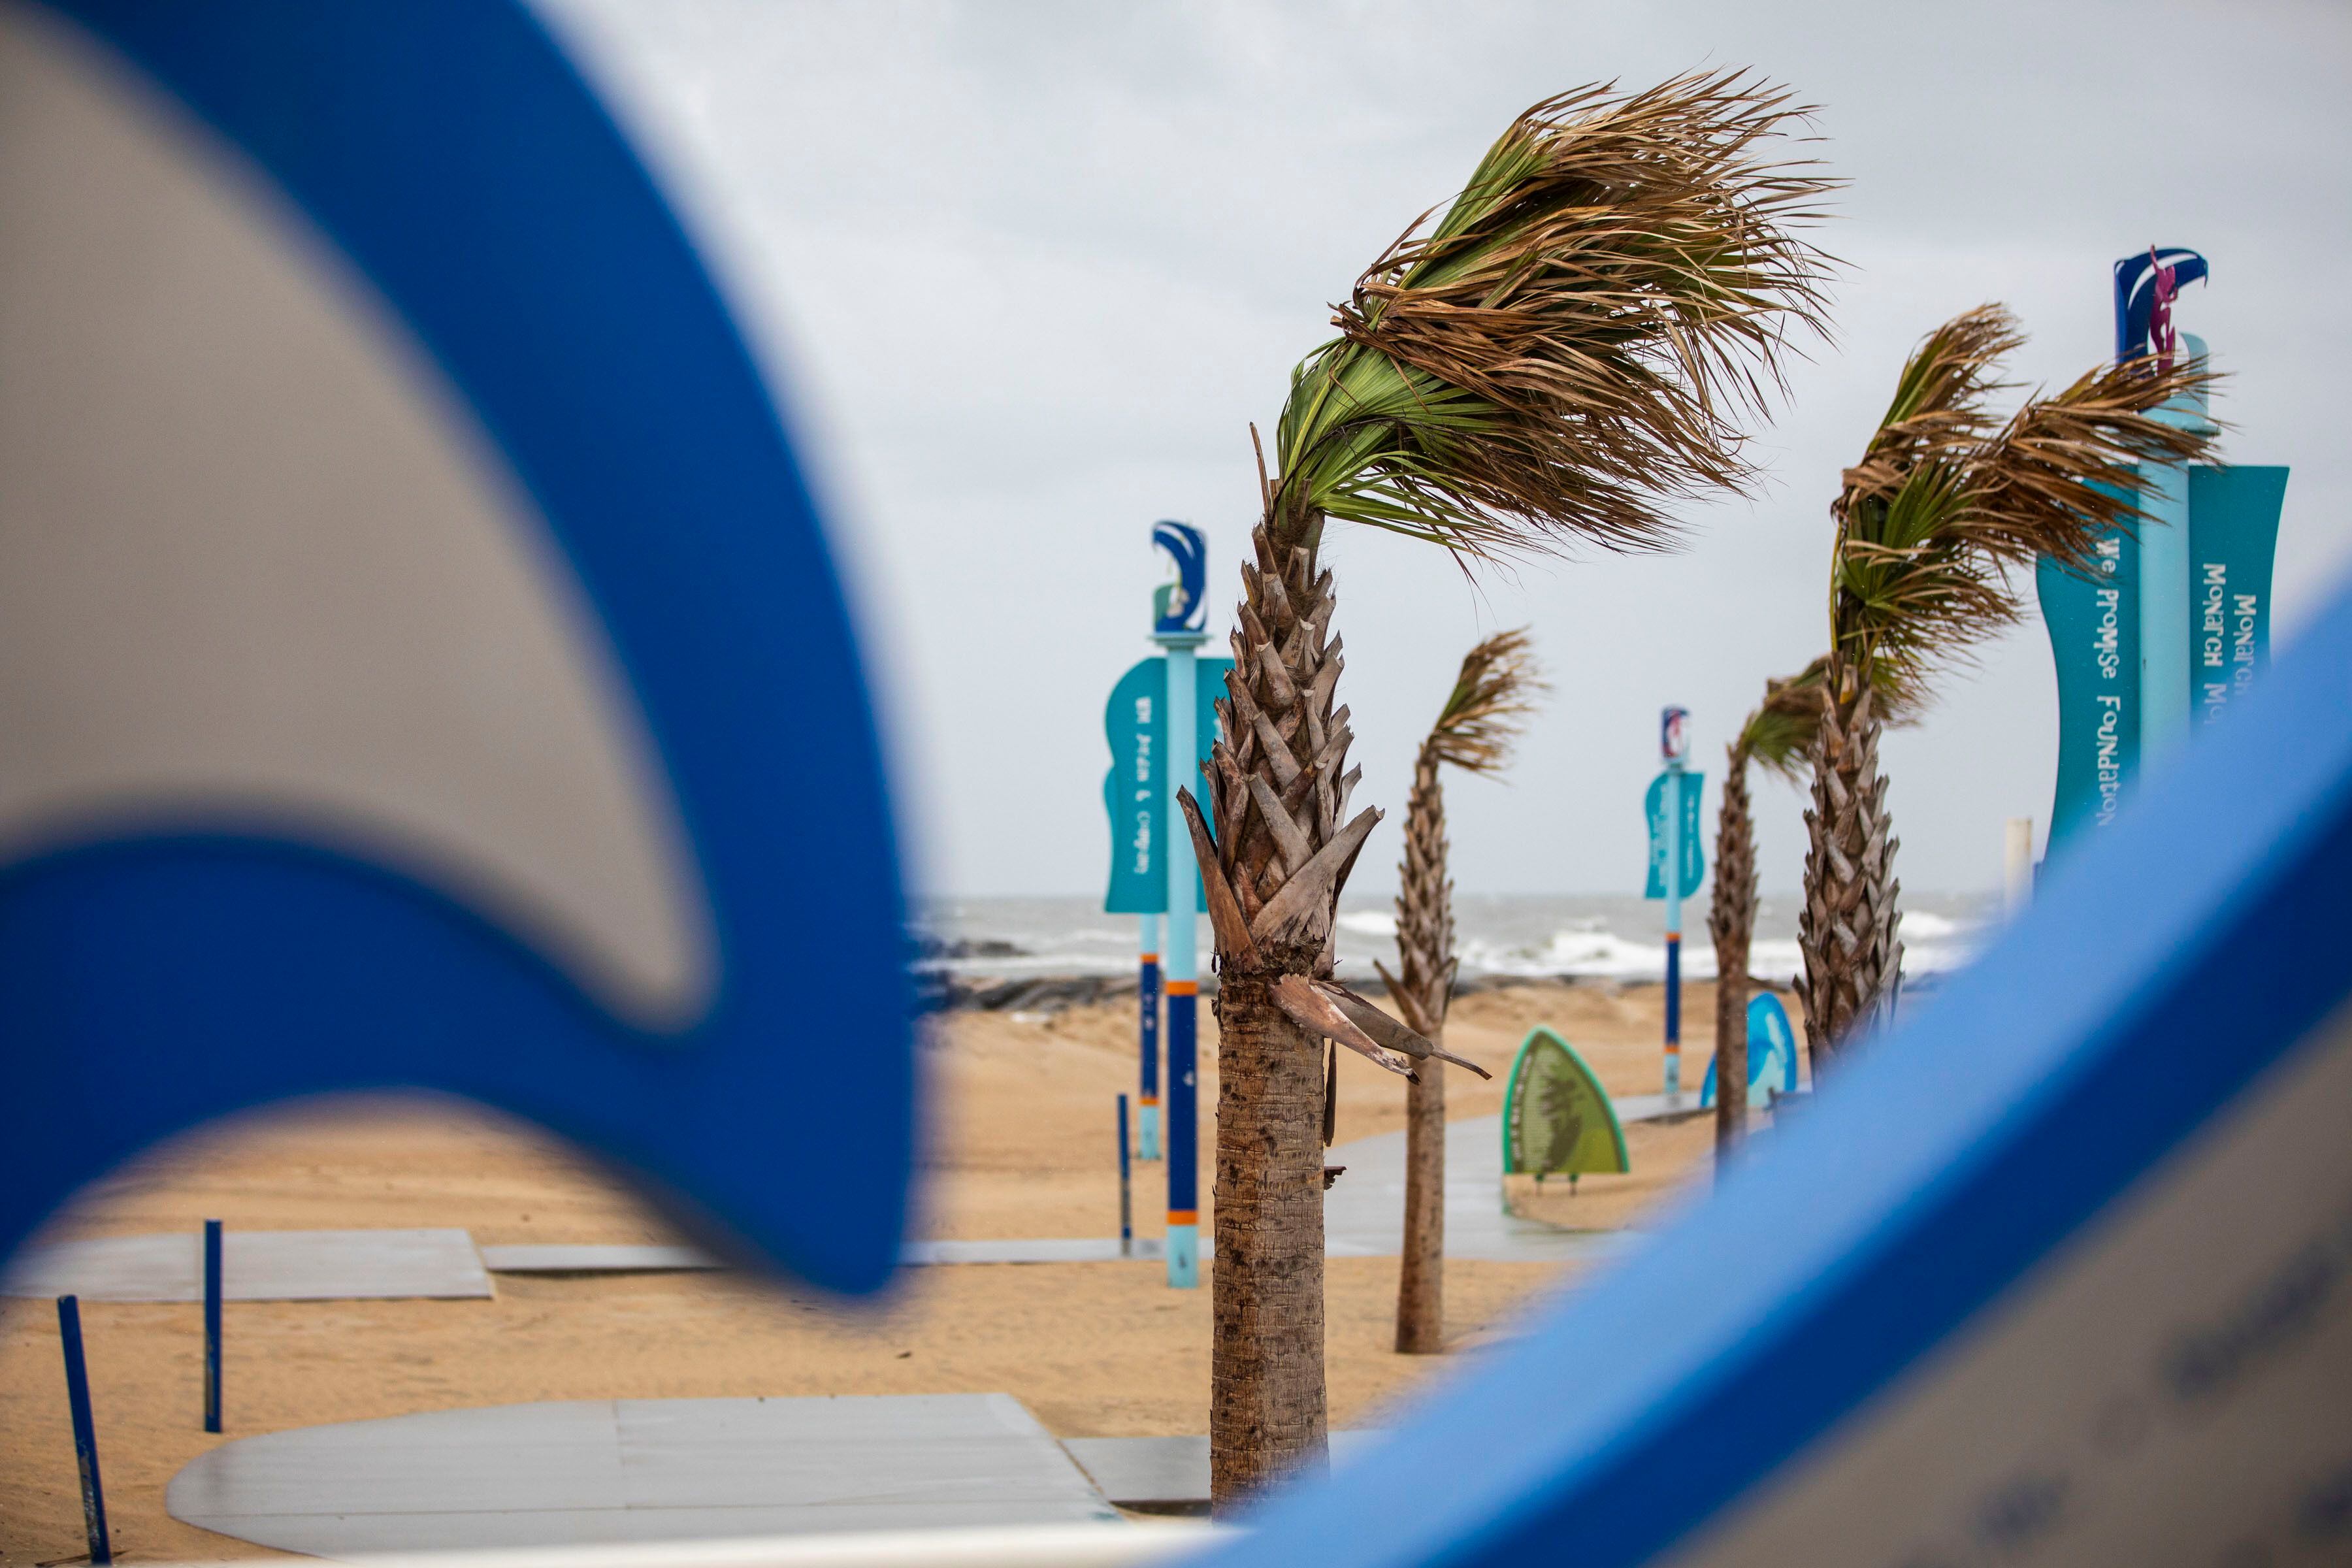 El viento mueve la copa de las palmeras en Virginia Beach, Virginia. (Kendall Warner/The Virginian-Pilot vía AP)